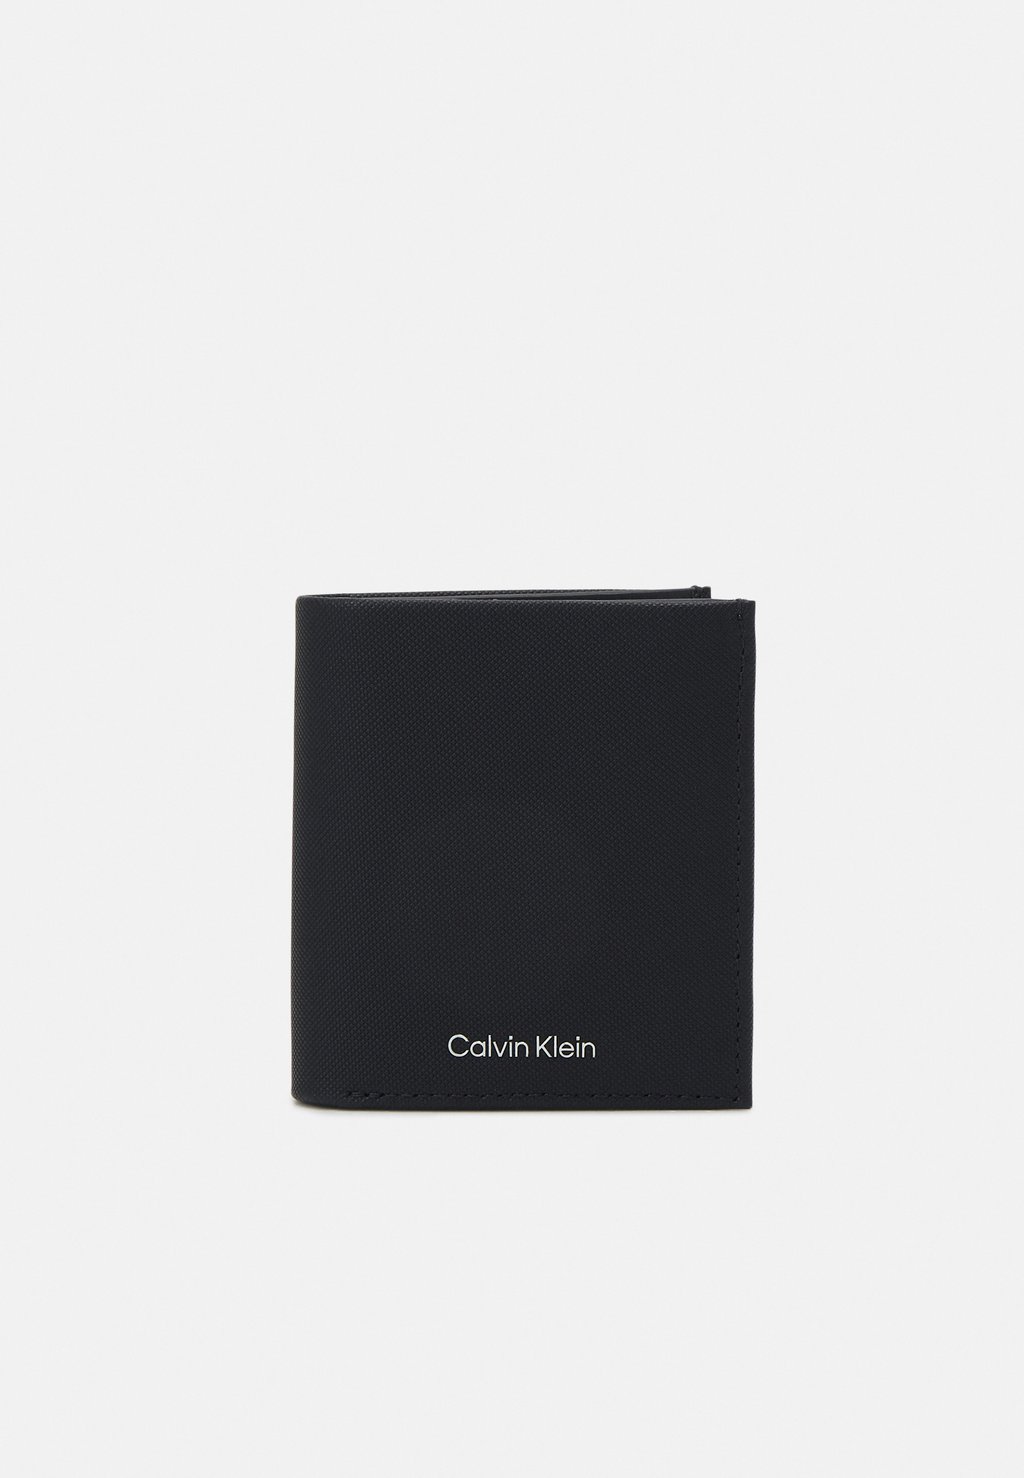 Кошелек MUST TRIFOLD COIN Calvin Klein, цвет black кошелек must mono trifold calvin klein цвет classic mono black